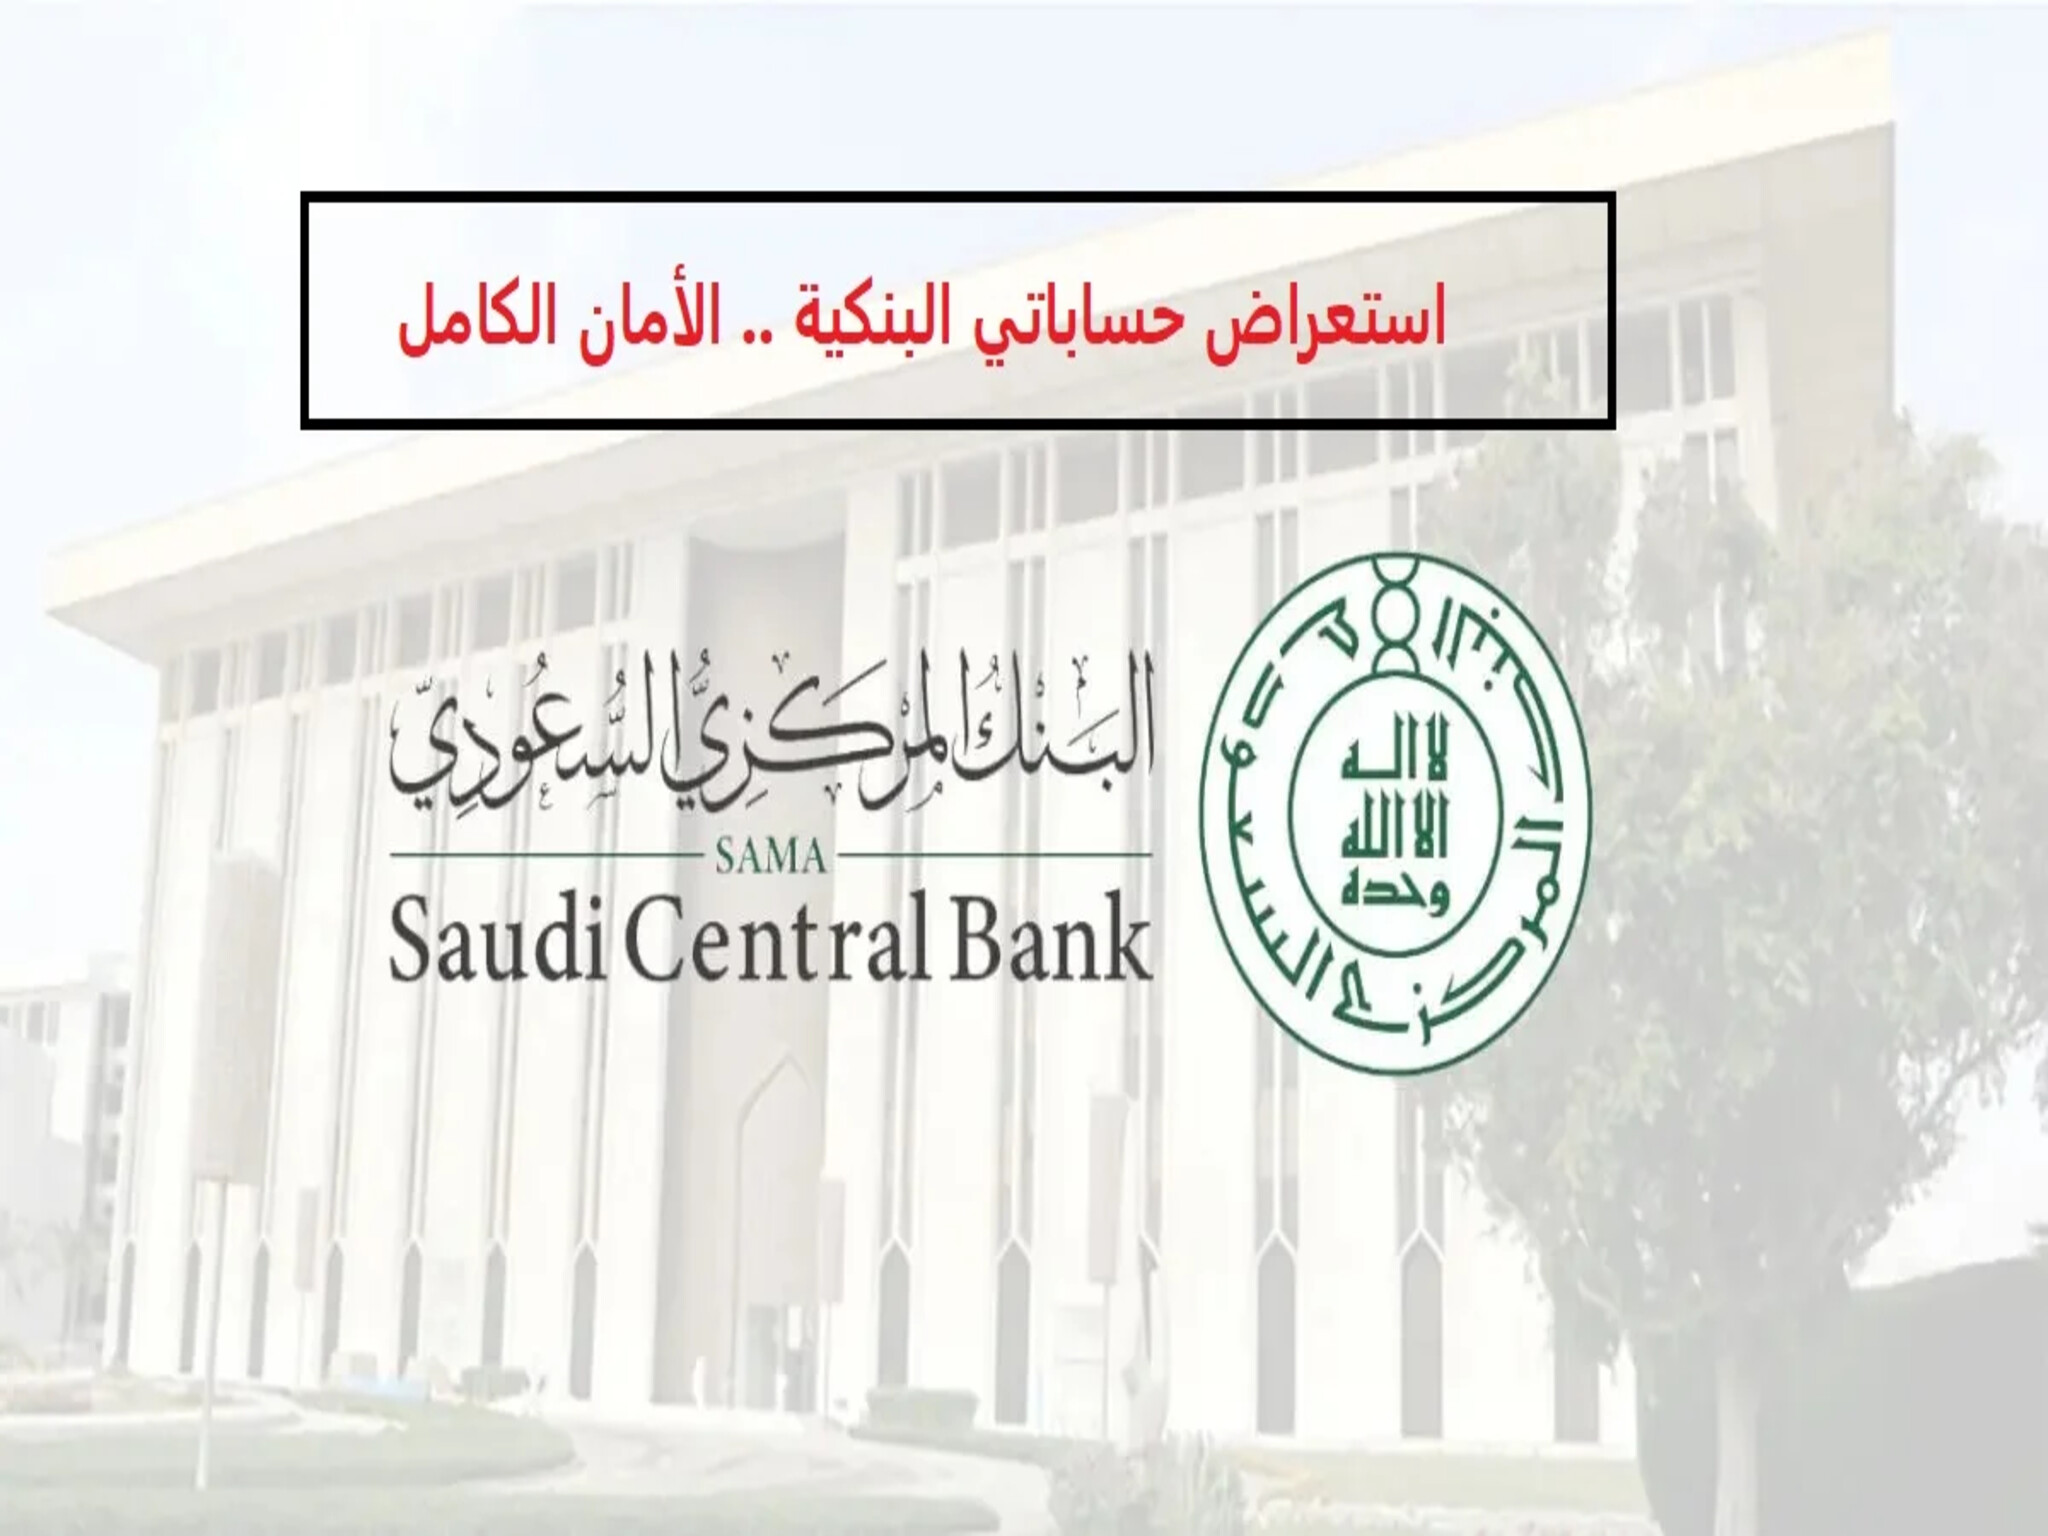  البنك المركزي السعودي يبدء إطلاق خدمة «استعراض حساباتي البنكية» 